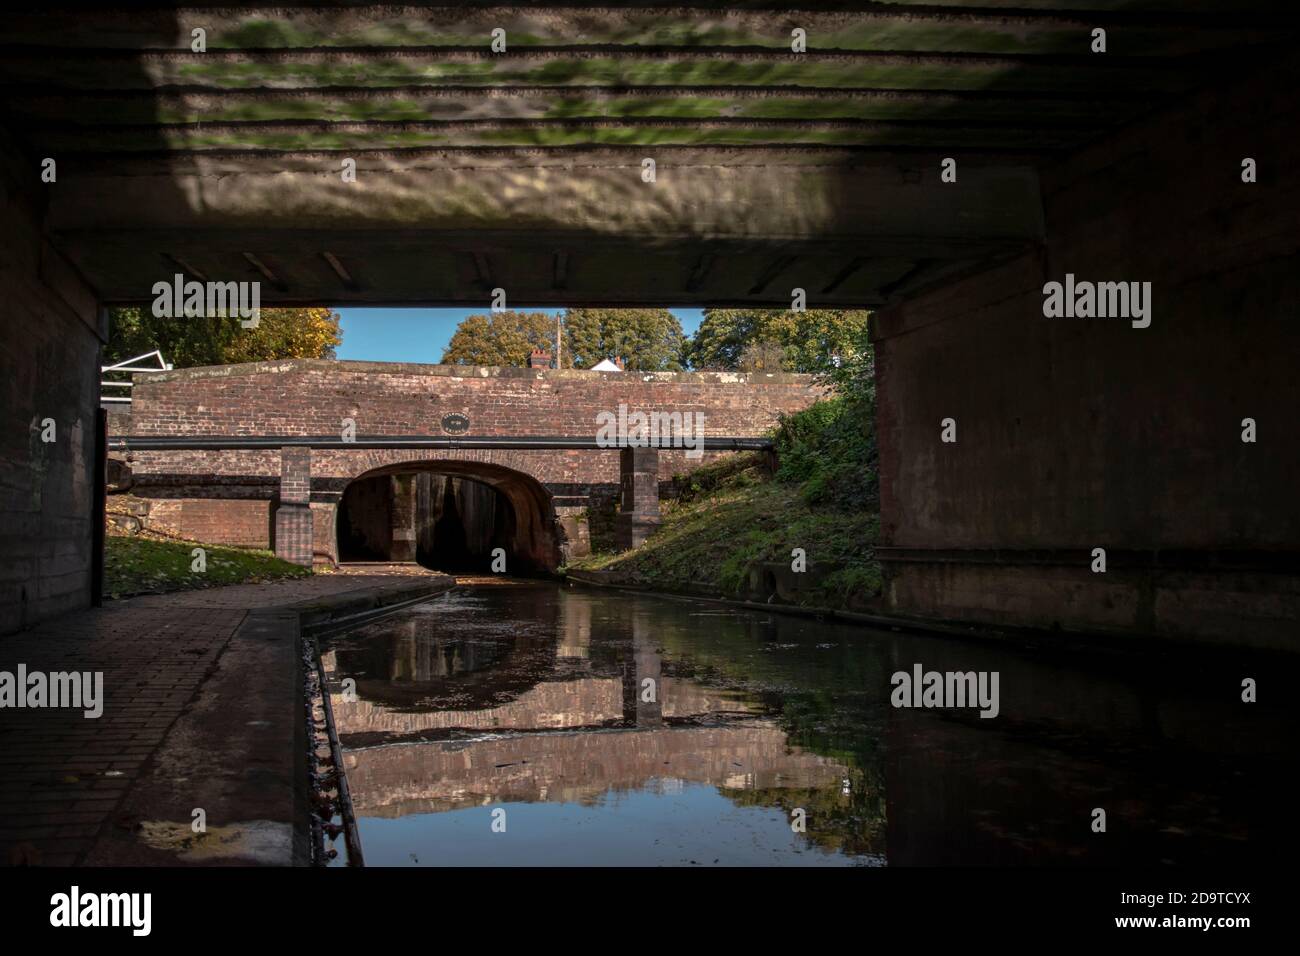 Eine alte Brücke unter einer Brücke mit dem Spiegelung des Wassers auf den Brücken Dach mit dem Kanal unten Stockfoto